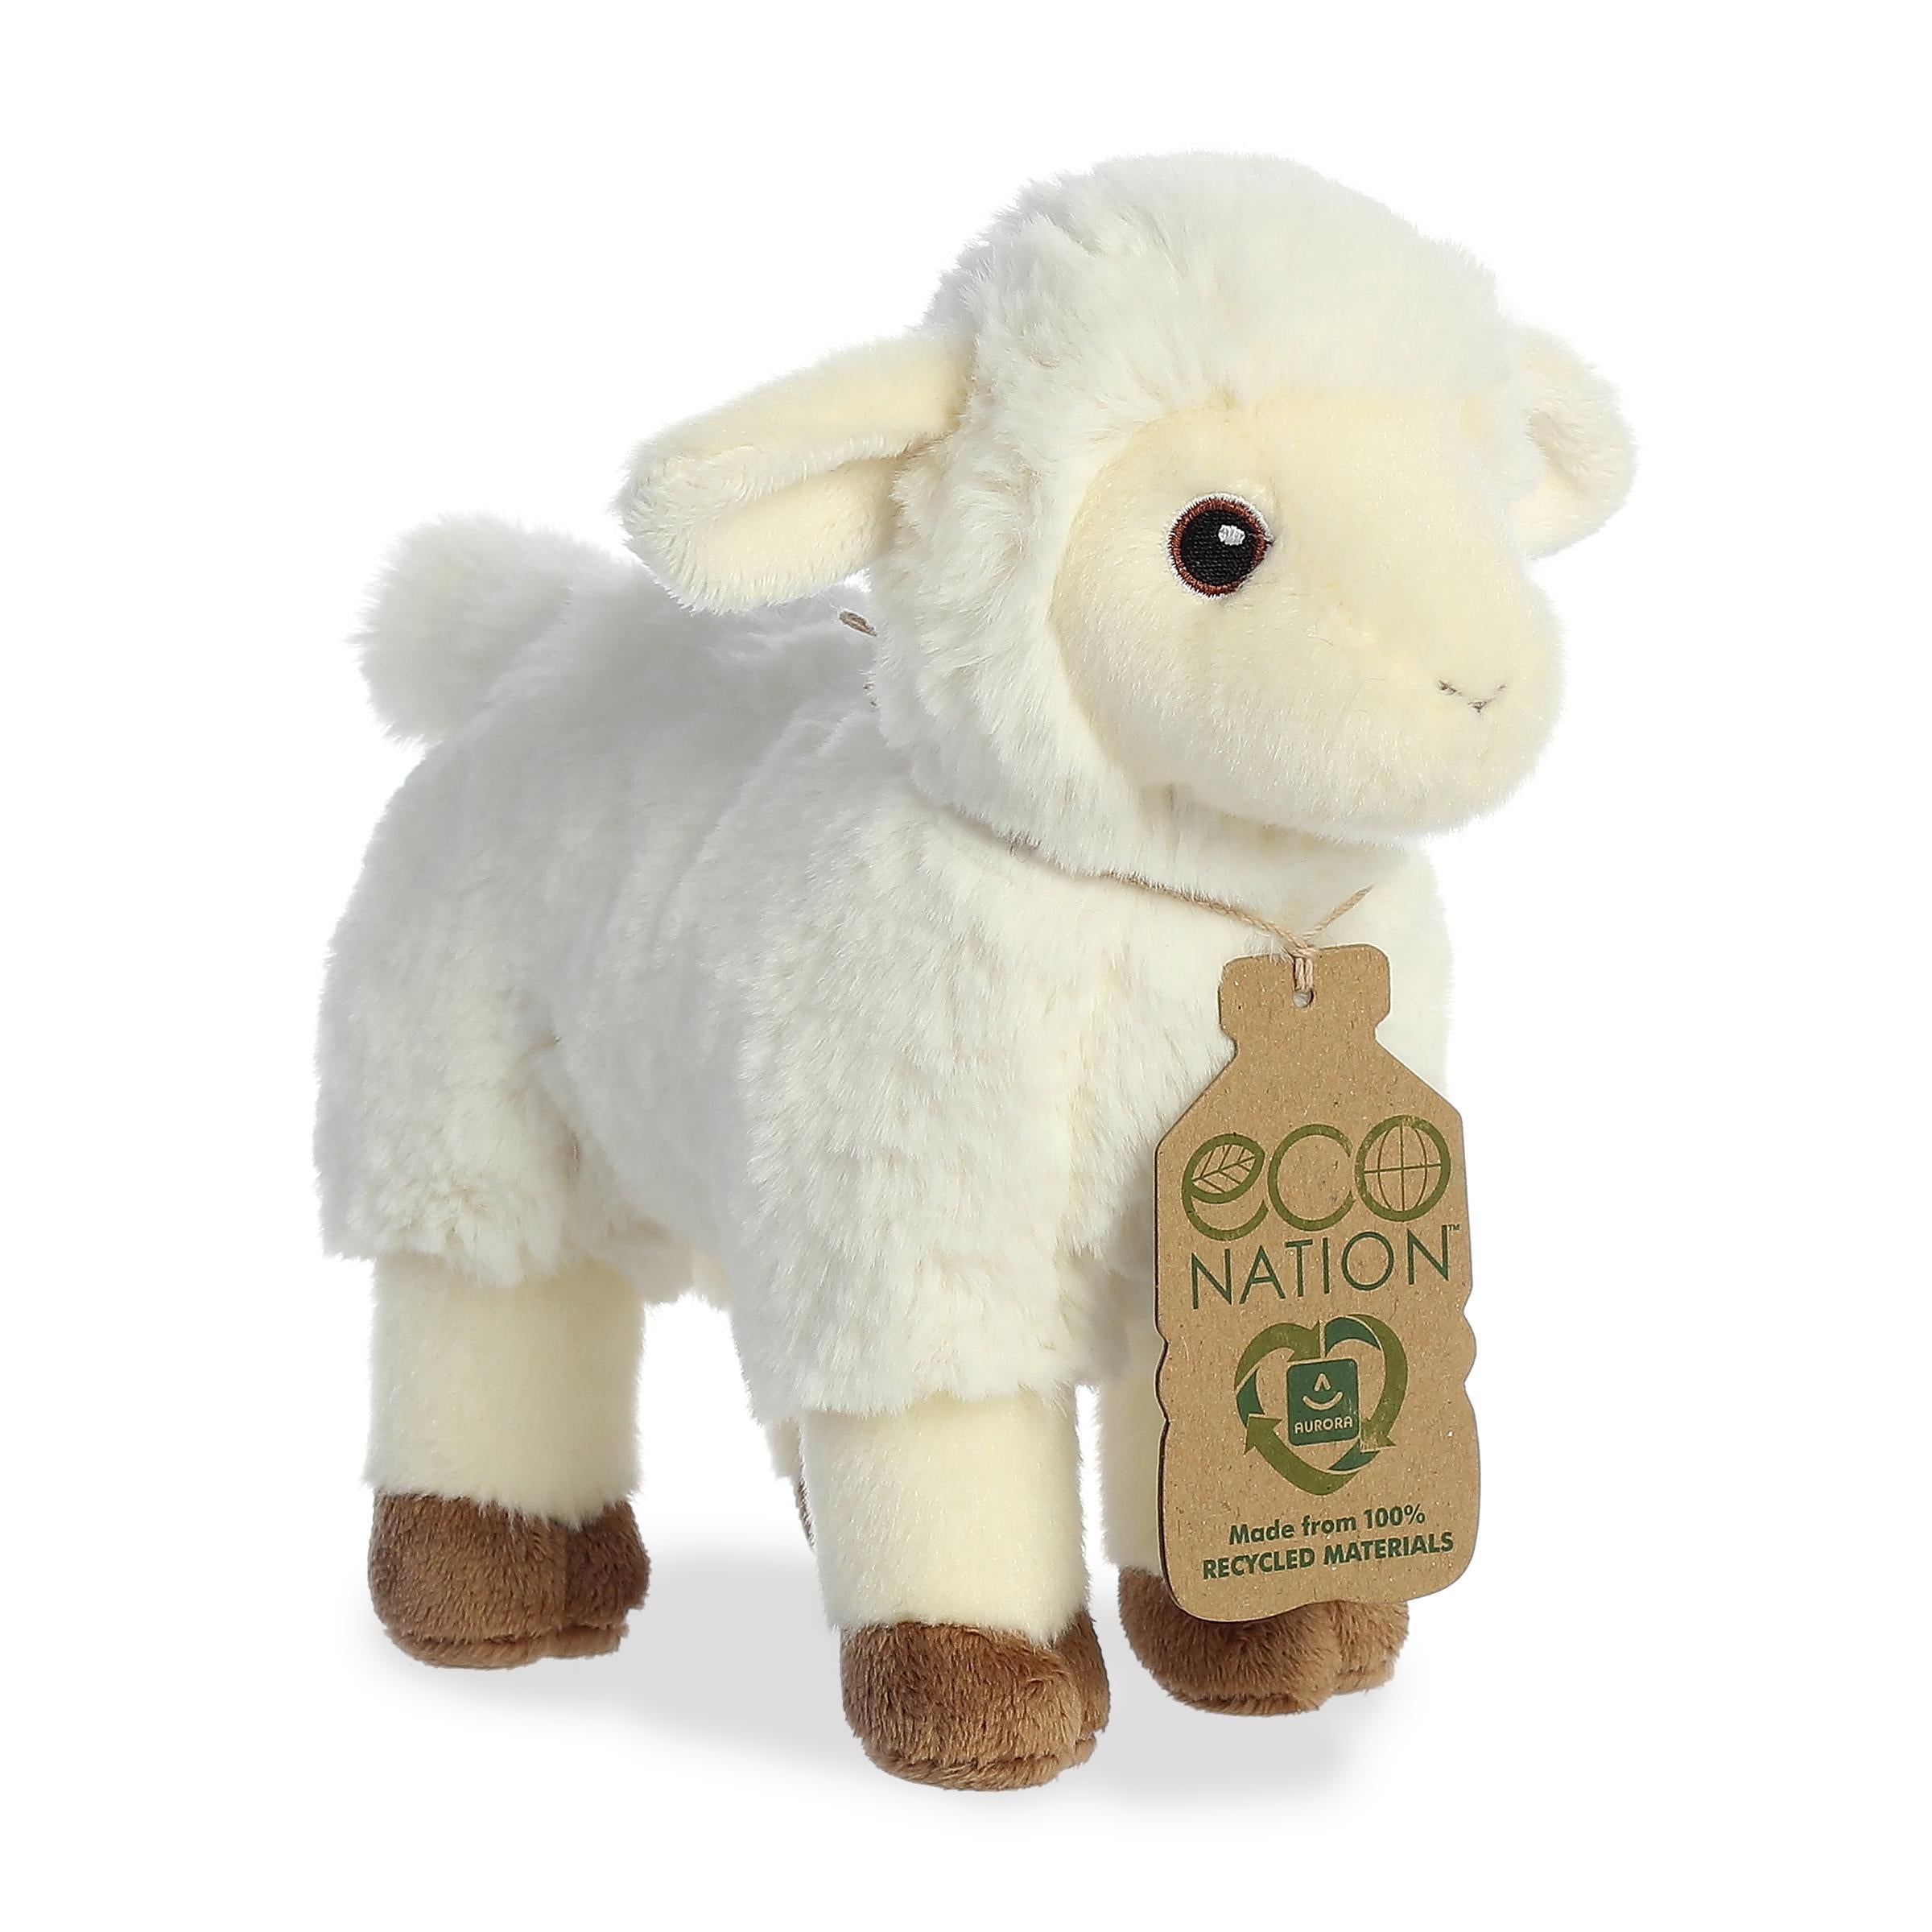 Lamb Ã¢â‚¬â€œ Sweet Eco-Nation Stuffed Animals Ã¢â‚¬â€œ Aurora